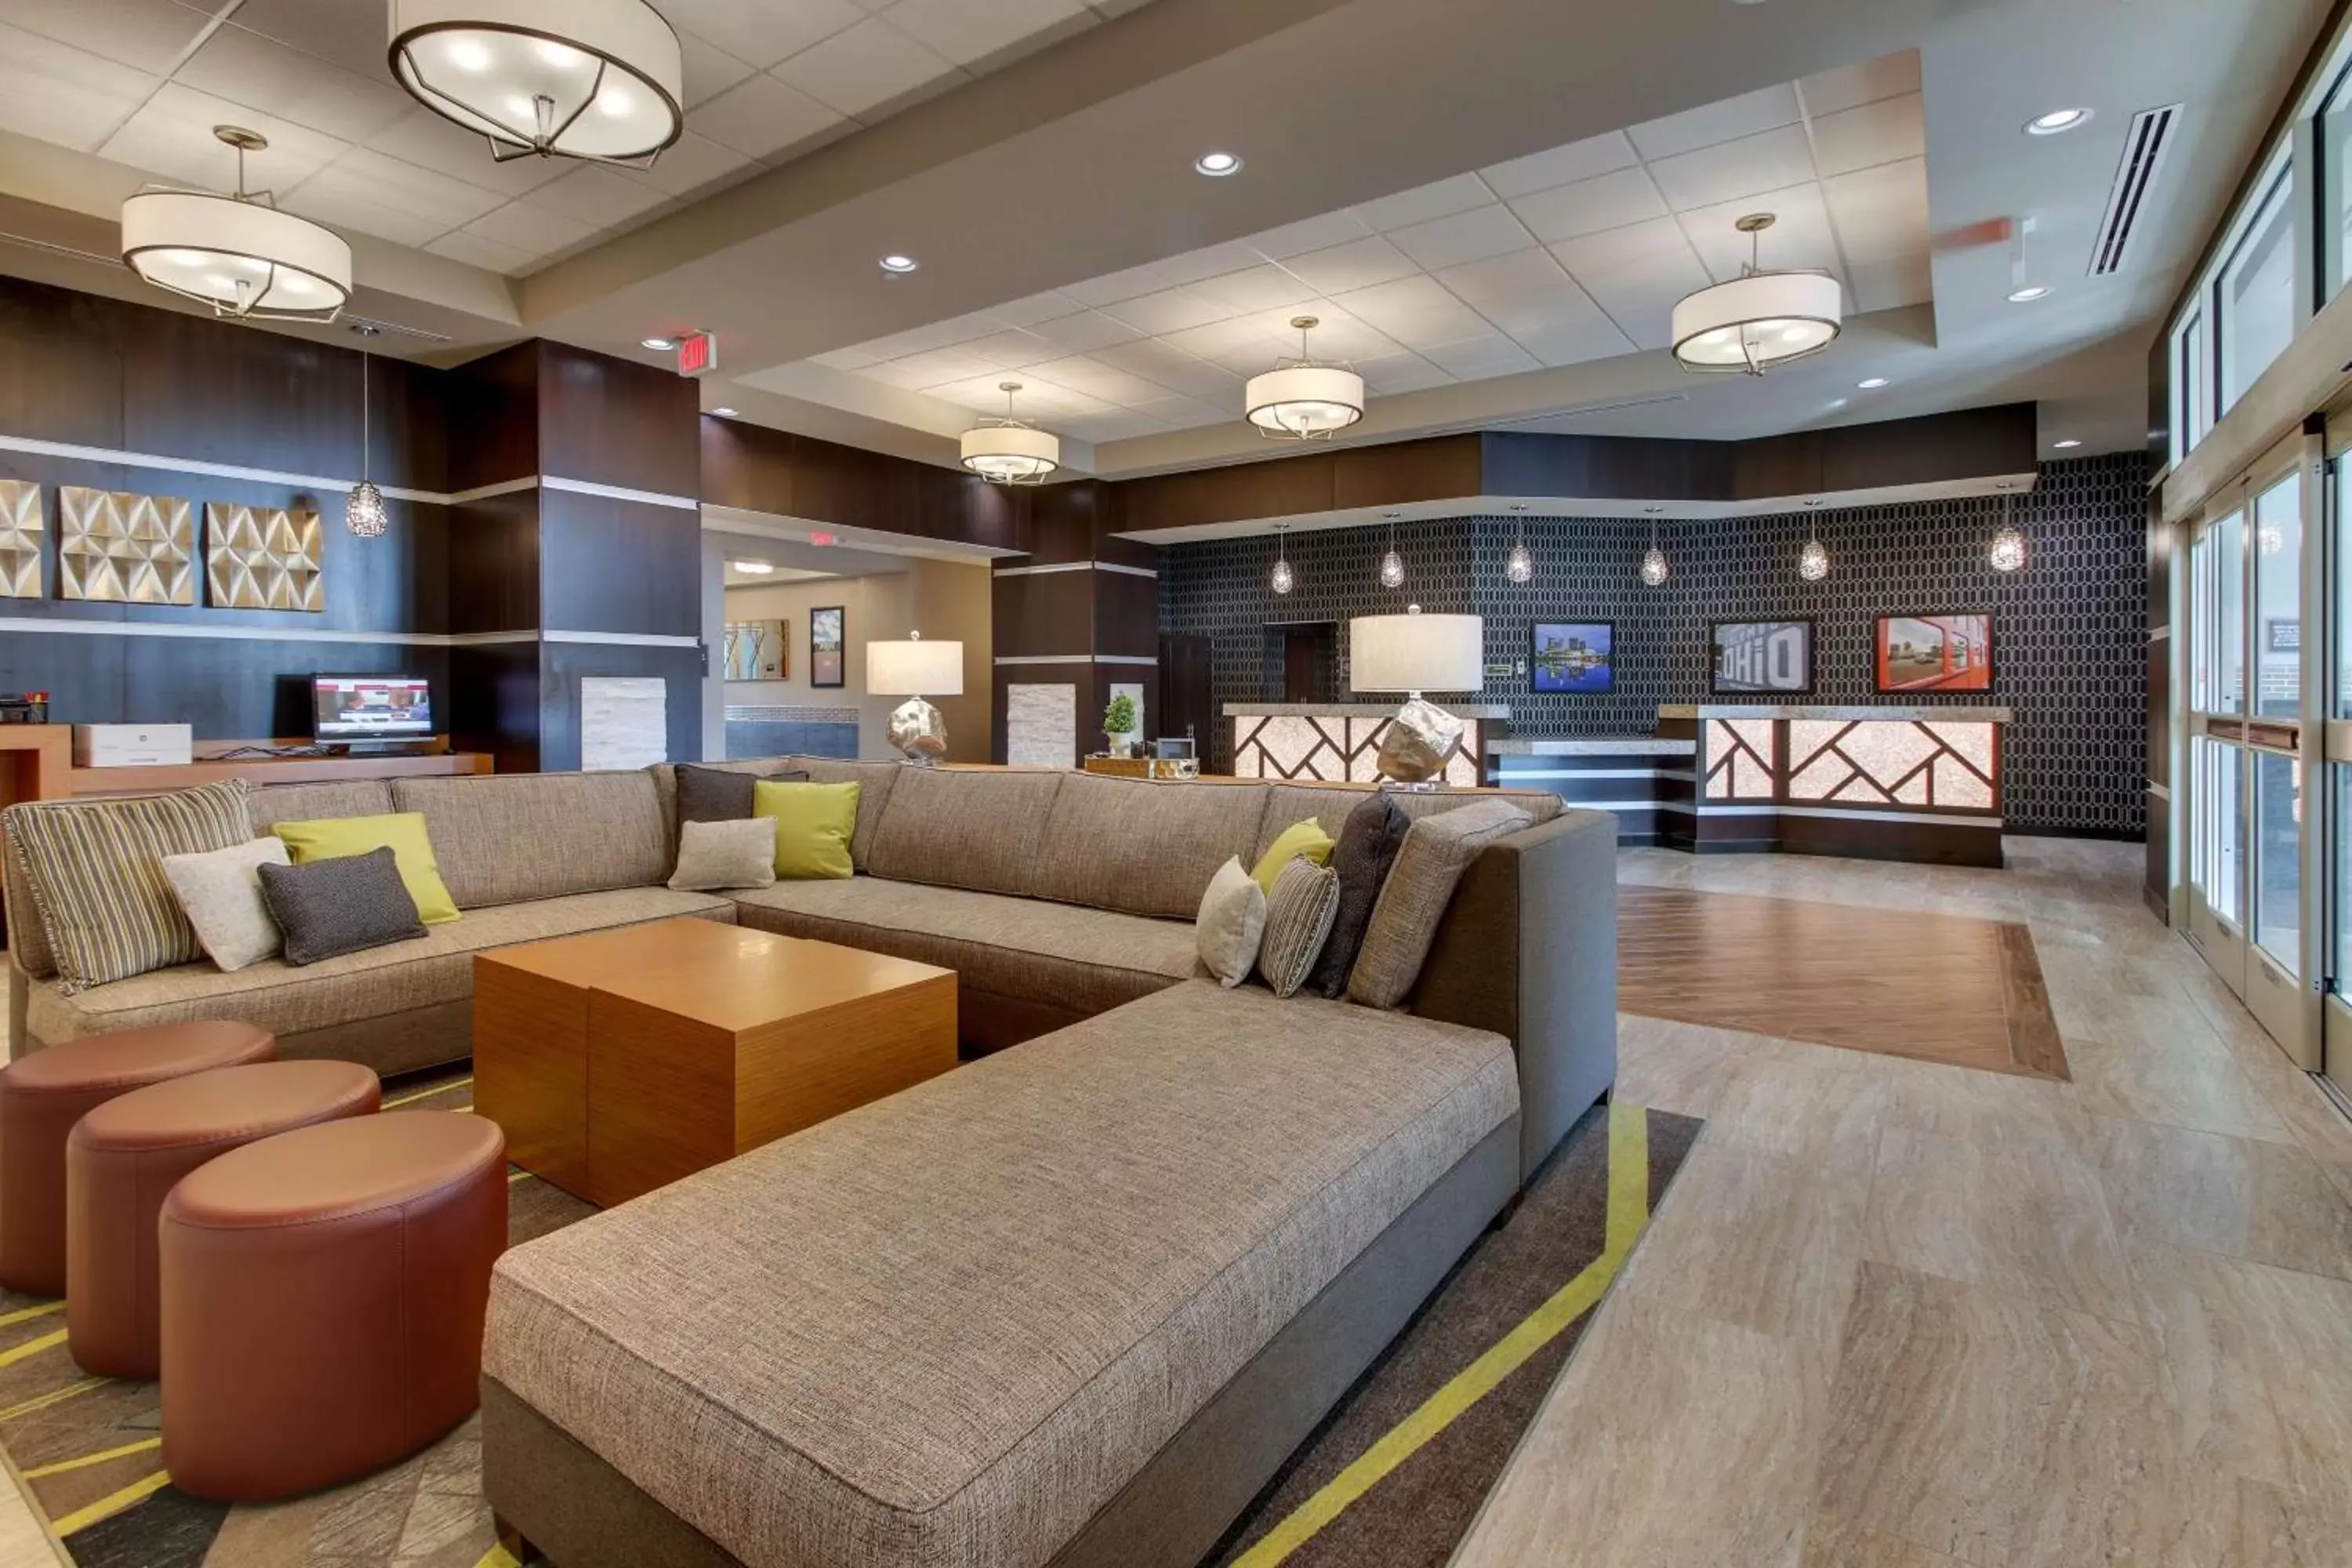 Lobby or reception in Drury Inn & Suites Columbus Polaris